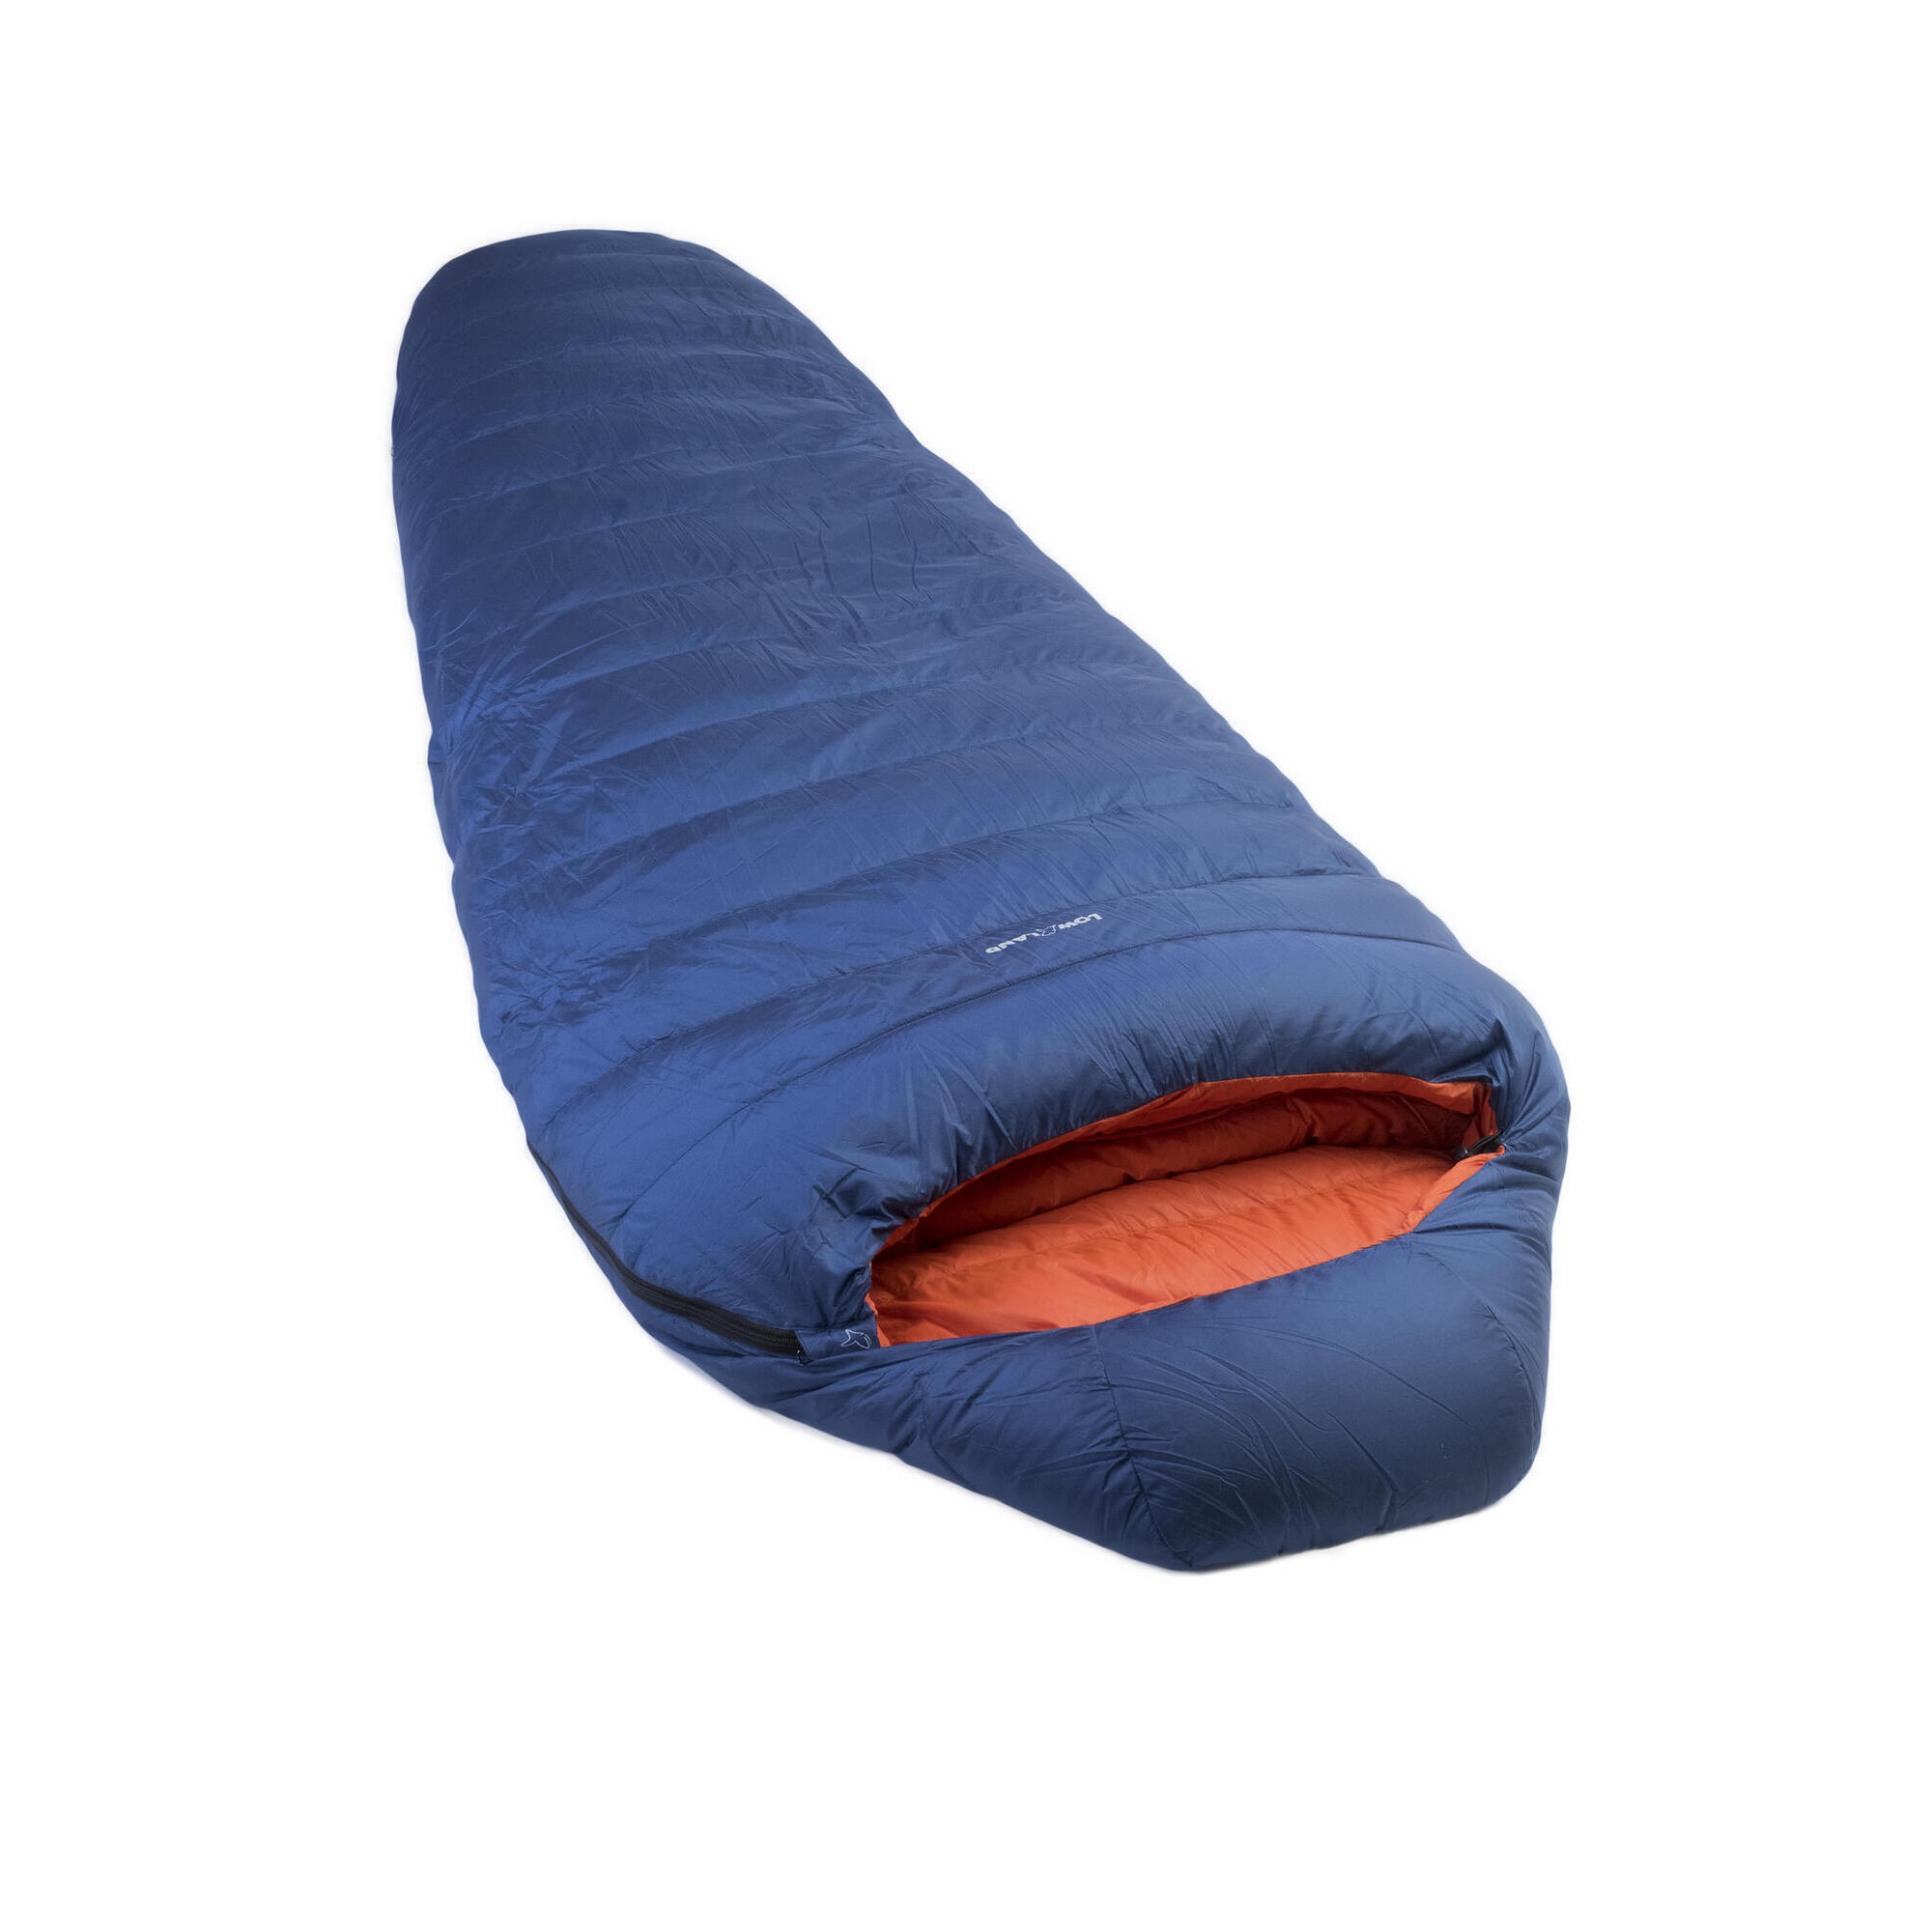 Мешок Kibo - 5 пуховый спальный нейлоновый 225x80 см, сине - оранжевый детский спальный мешок зимний теплый спальный мешок из 100% хлопка спальный мешок для детей комбинезон спальный мешок с температурой 16 ℃